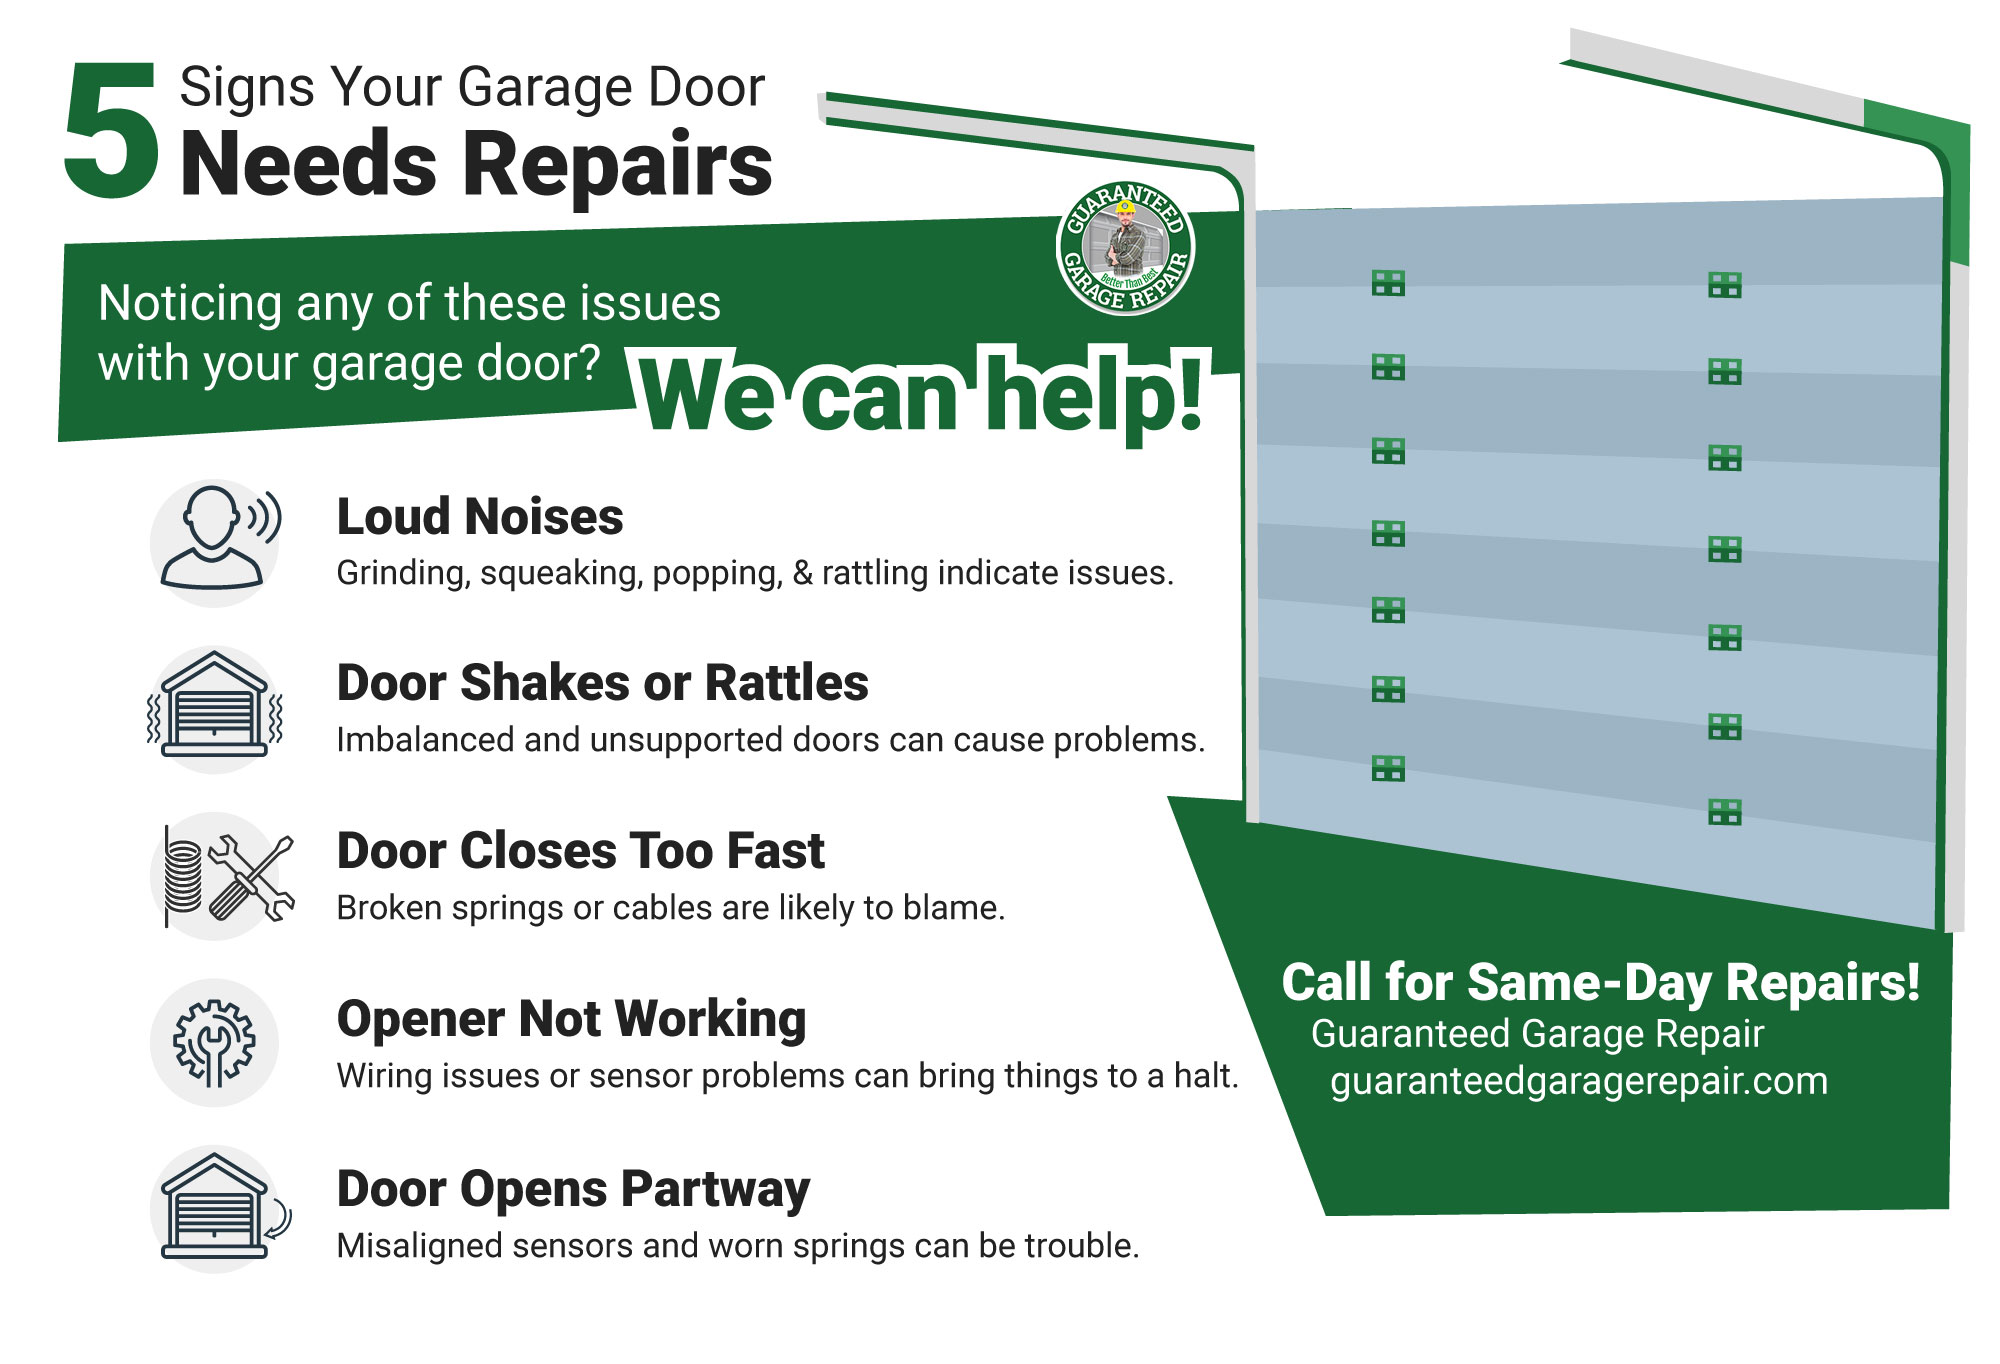 5 Signs Your Garage Door Needs Repairs infographic